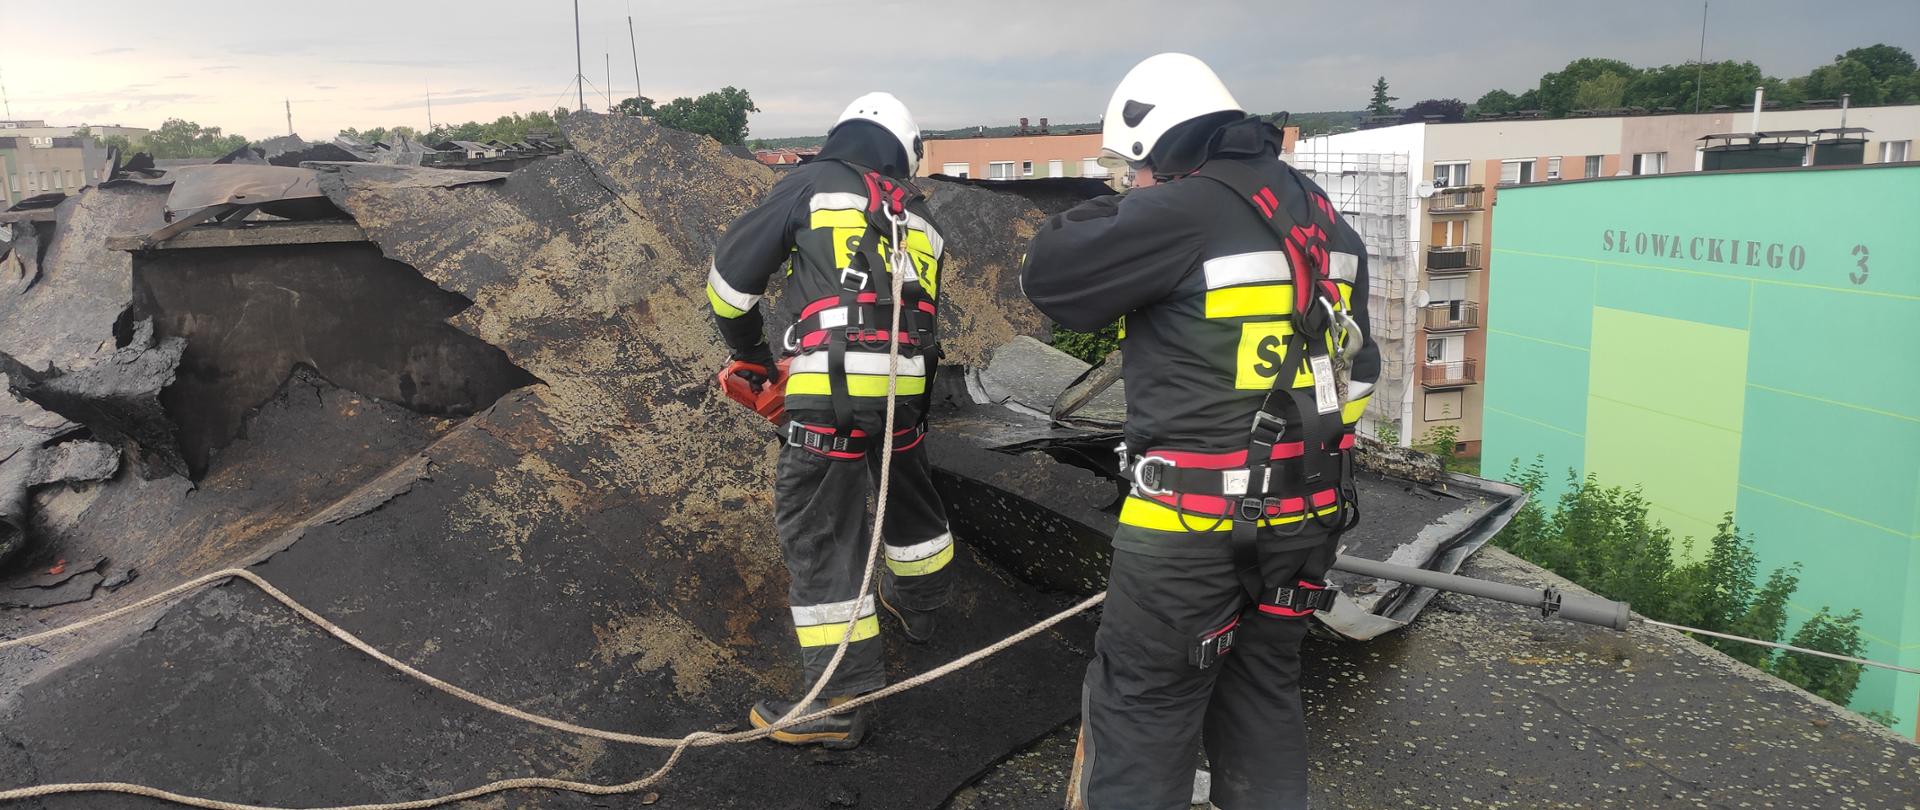 Na zdjęciu dwóch strażaków w ubraniach specjalnych i białych hełmach, zabezpieczeni linkami. Strażacy znajdują się na dachu usuwają zerwane pokrycie dachu.